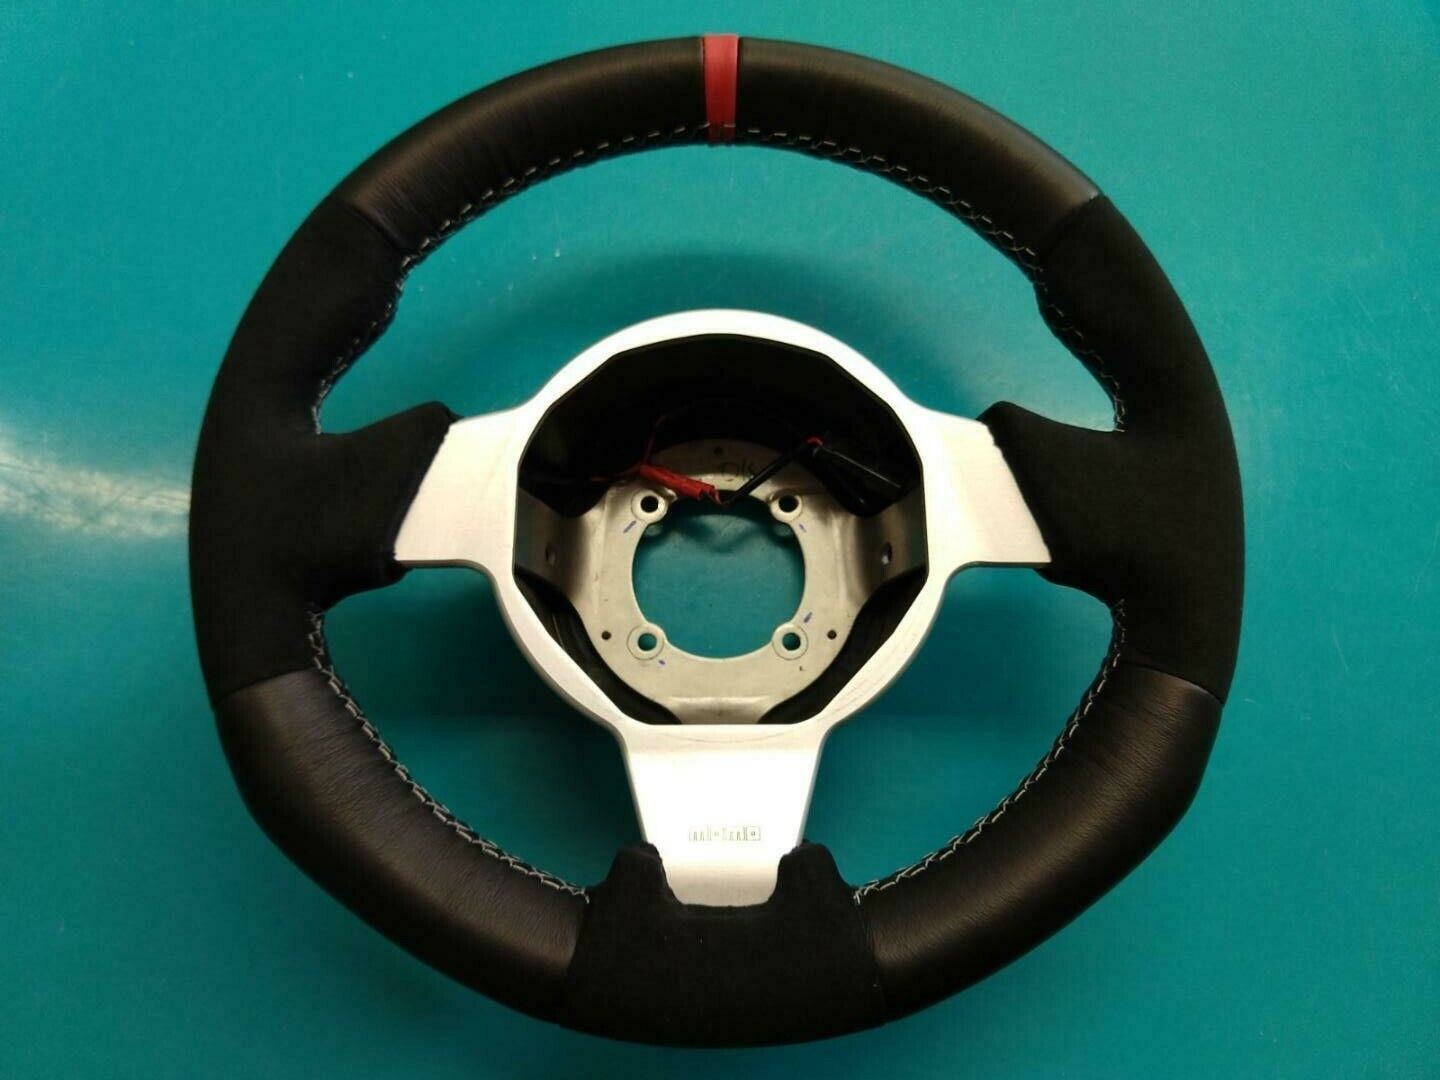 Lotus Elise/Tesla Roaster Custom Padded Steering Wheel -  NEW Leather/Alcantara